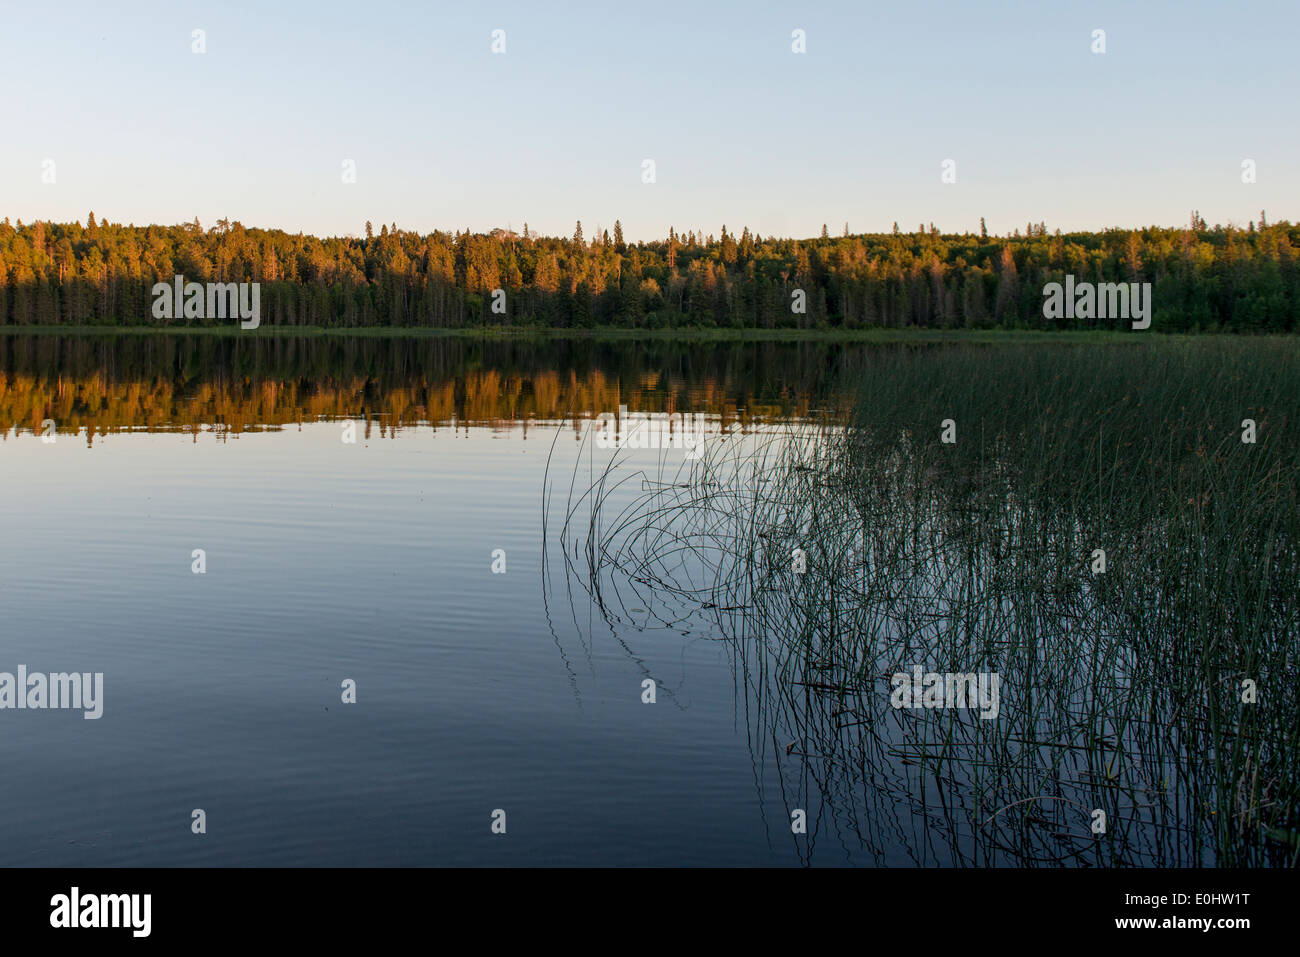 Reflet d'arbres sur le lac, terrain de camping du lac Audy, Parc national du Mont-Riding, Manitoba, Canada Banque D'Images